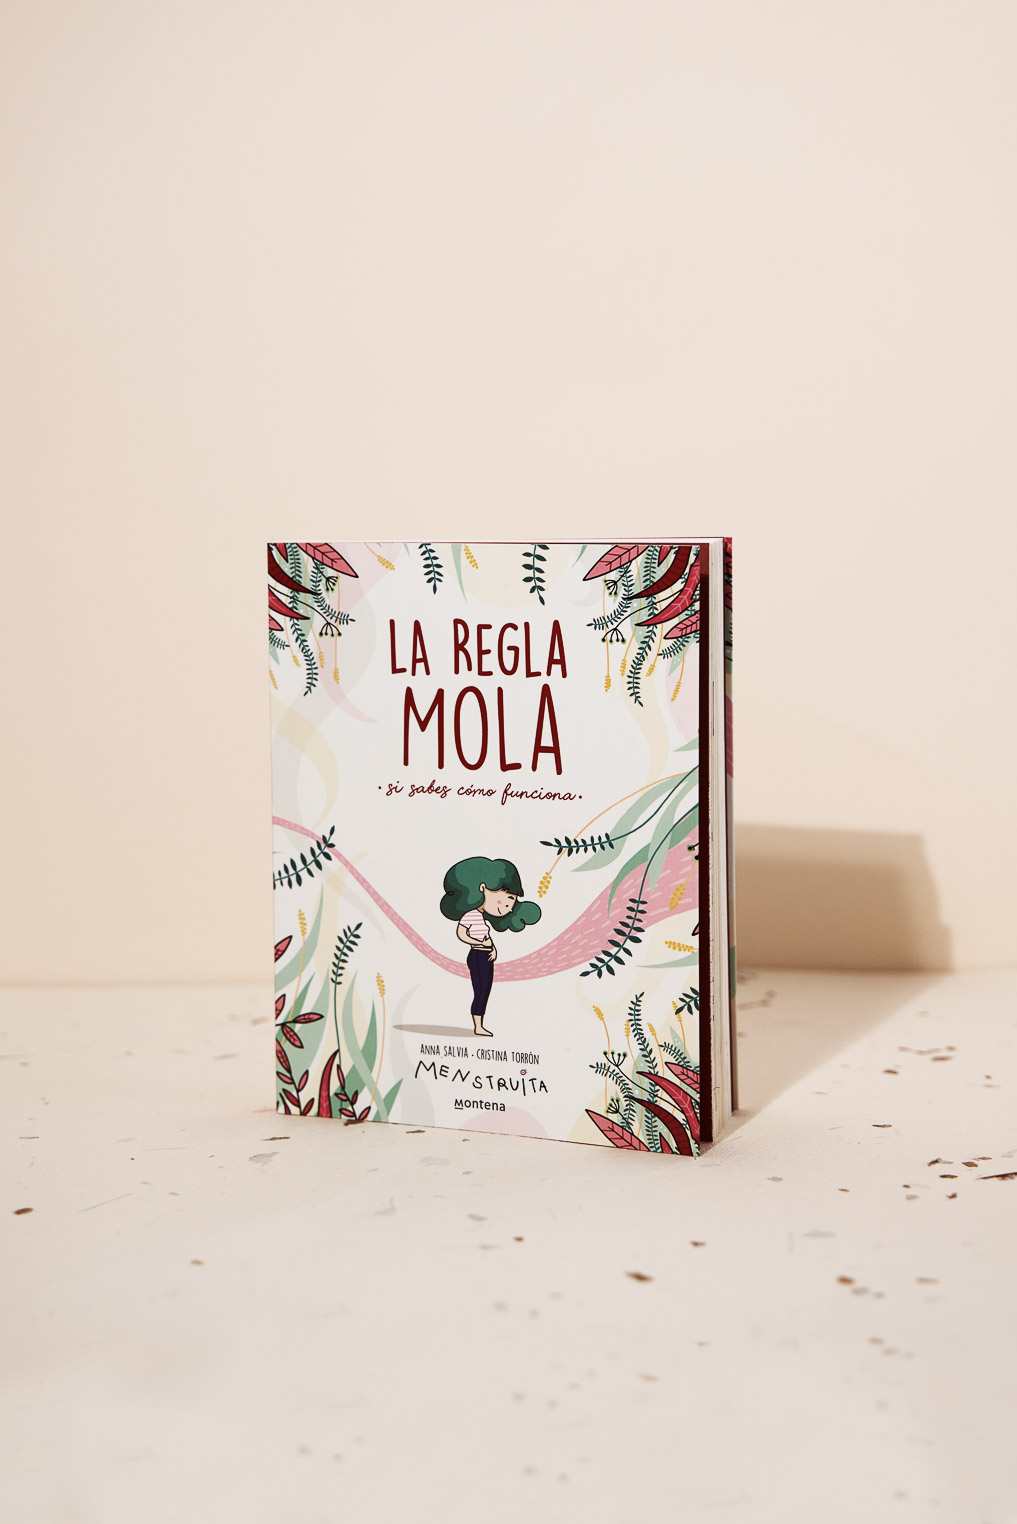  Tu cuerpo mola: Aprende a descubrirlo (Spanish Edition